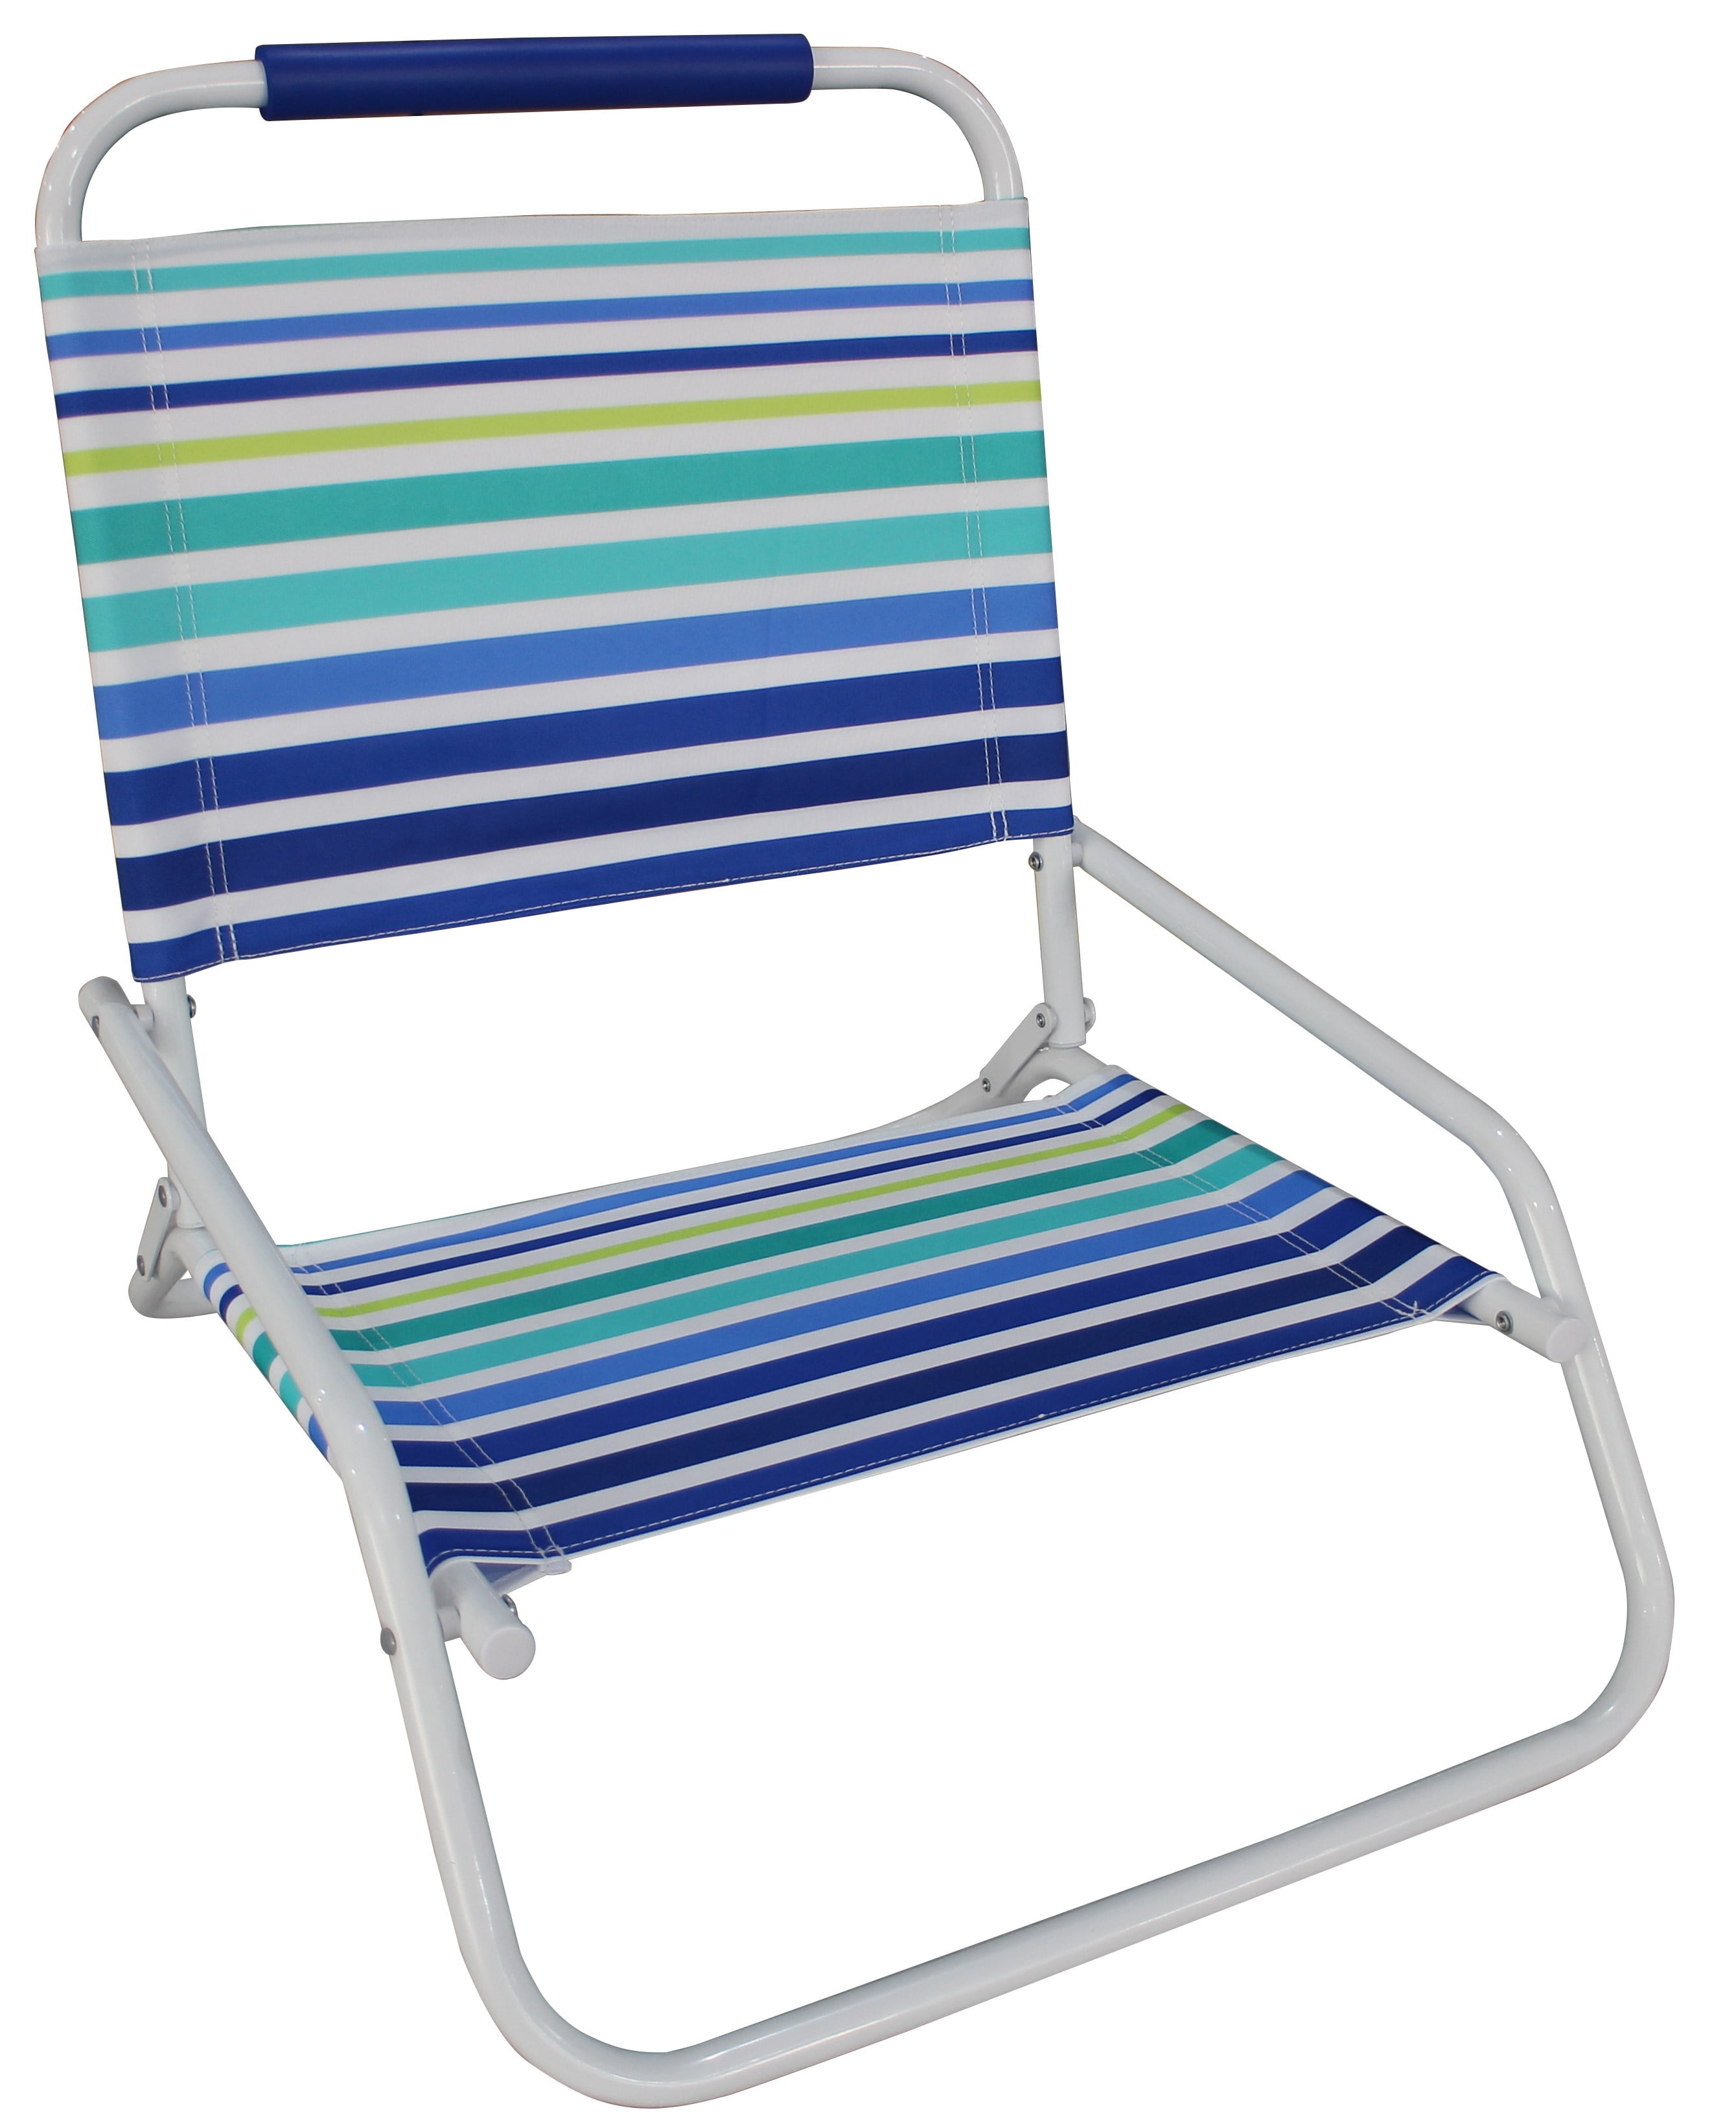 Low Beach Chair Folding : Free Shipping Green Beach Chair Lawn Chair ...